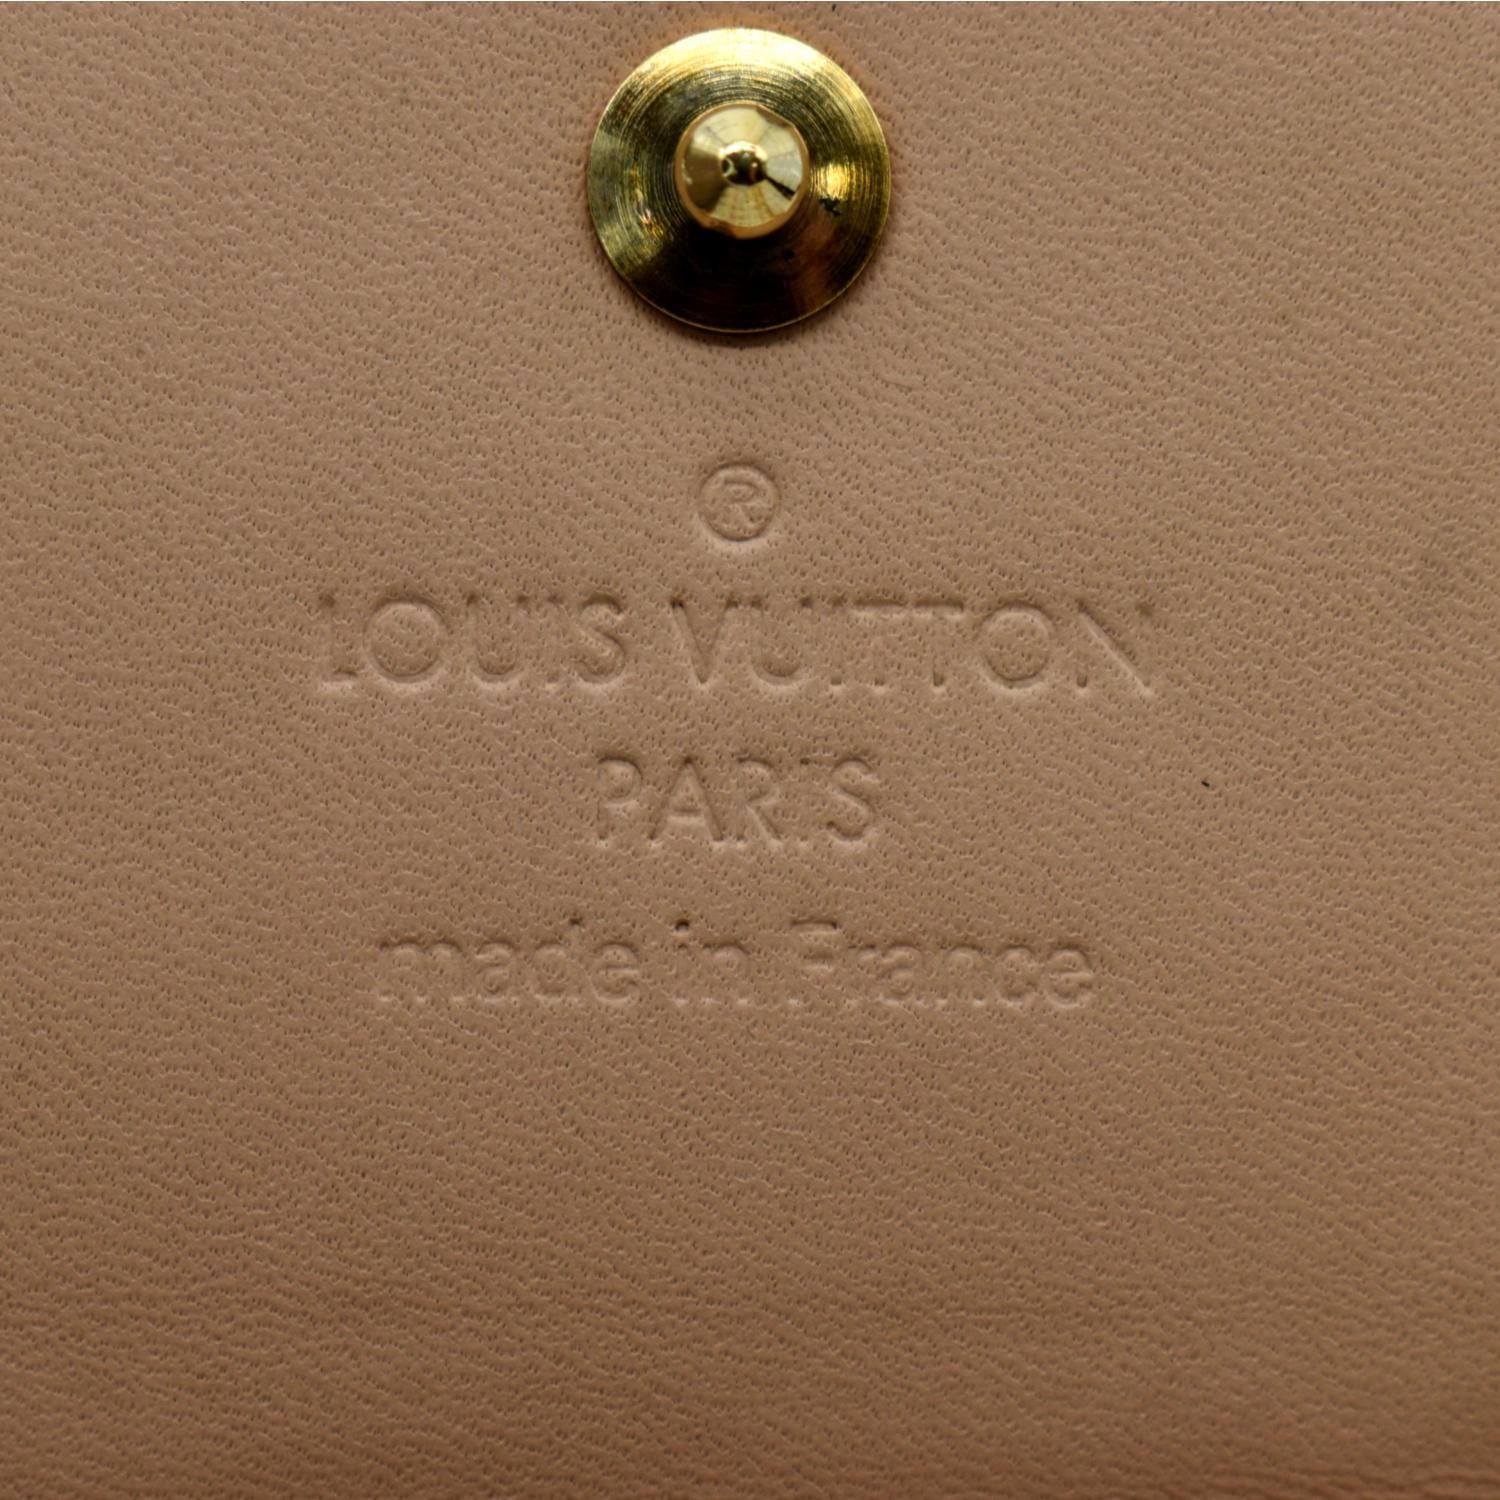 Louis Vuitton Elise Trifold Wallet - Monogram Multicolore White